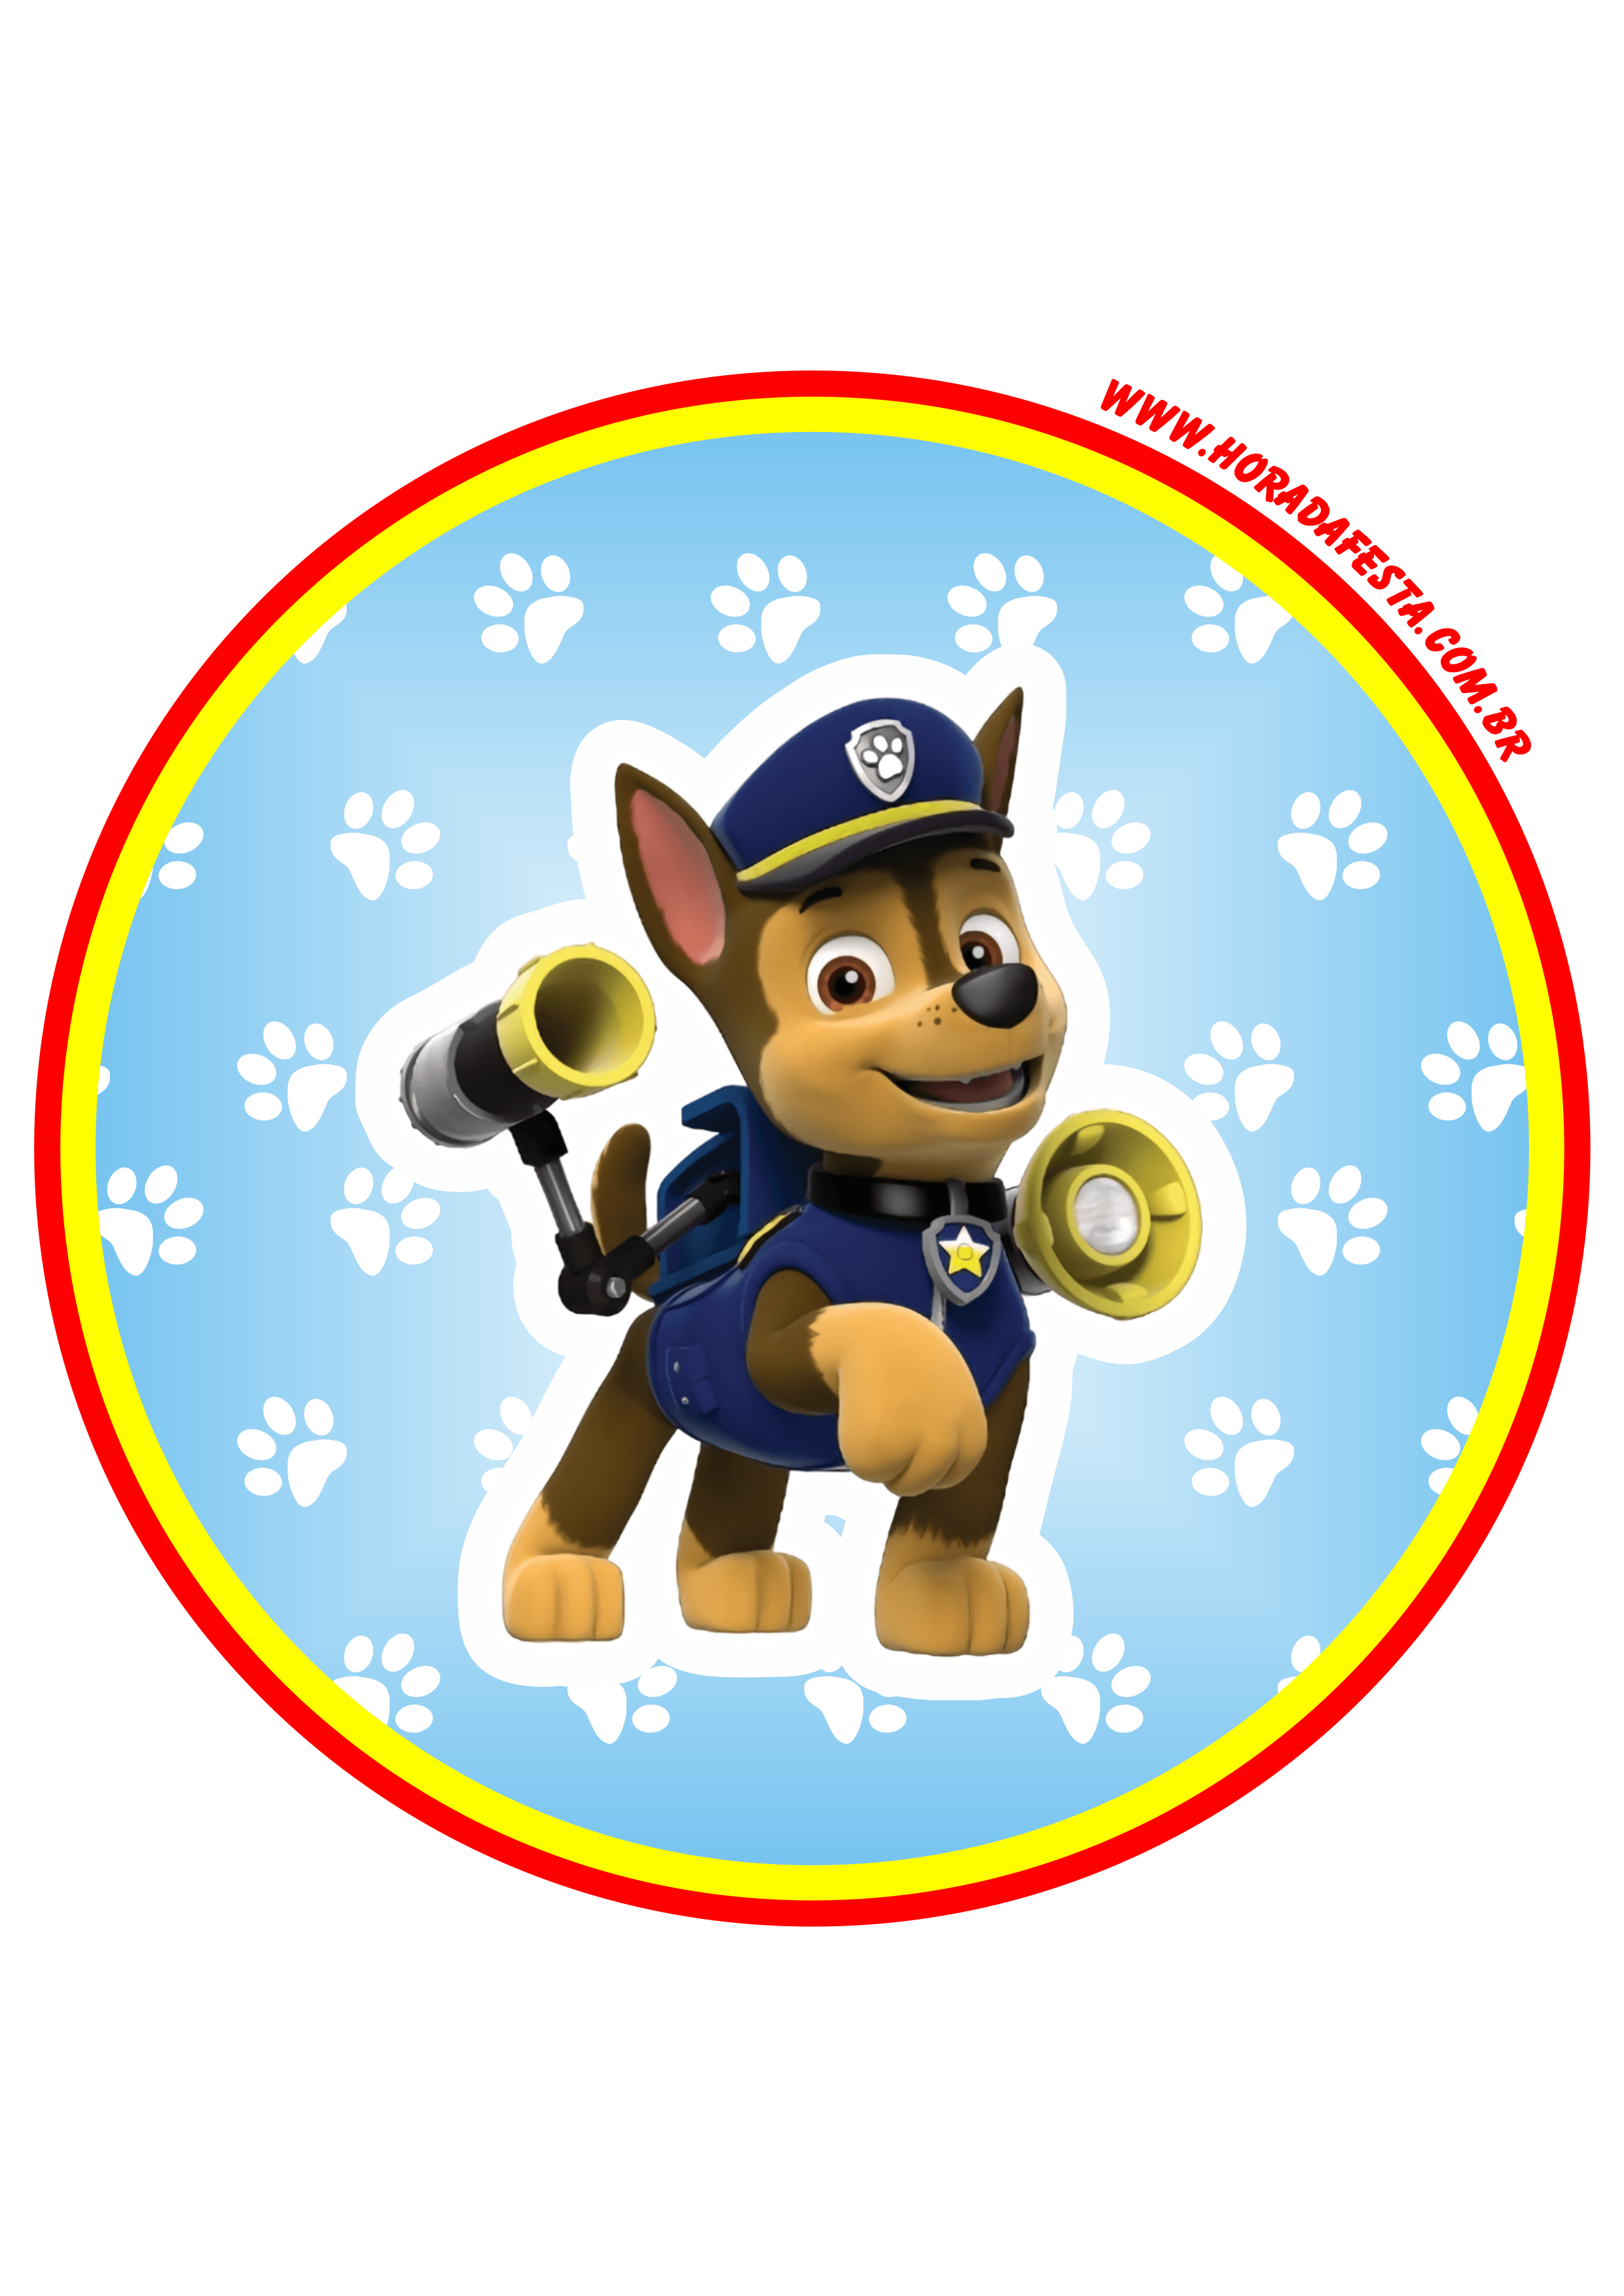 Patrulha canina paw patrol chase desenho infantil cachorrinho adesivo painel tag sticker festa decoração png